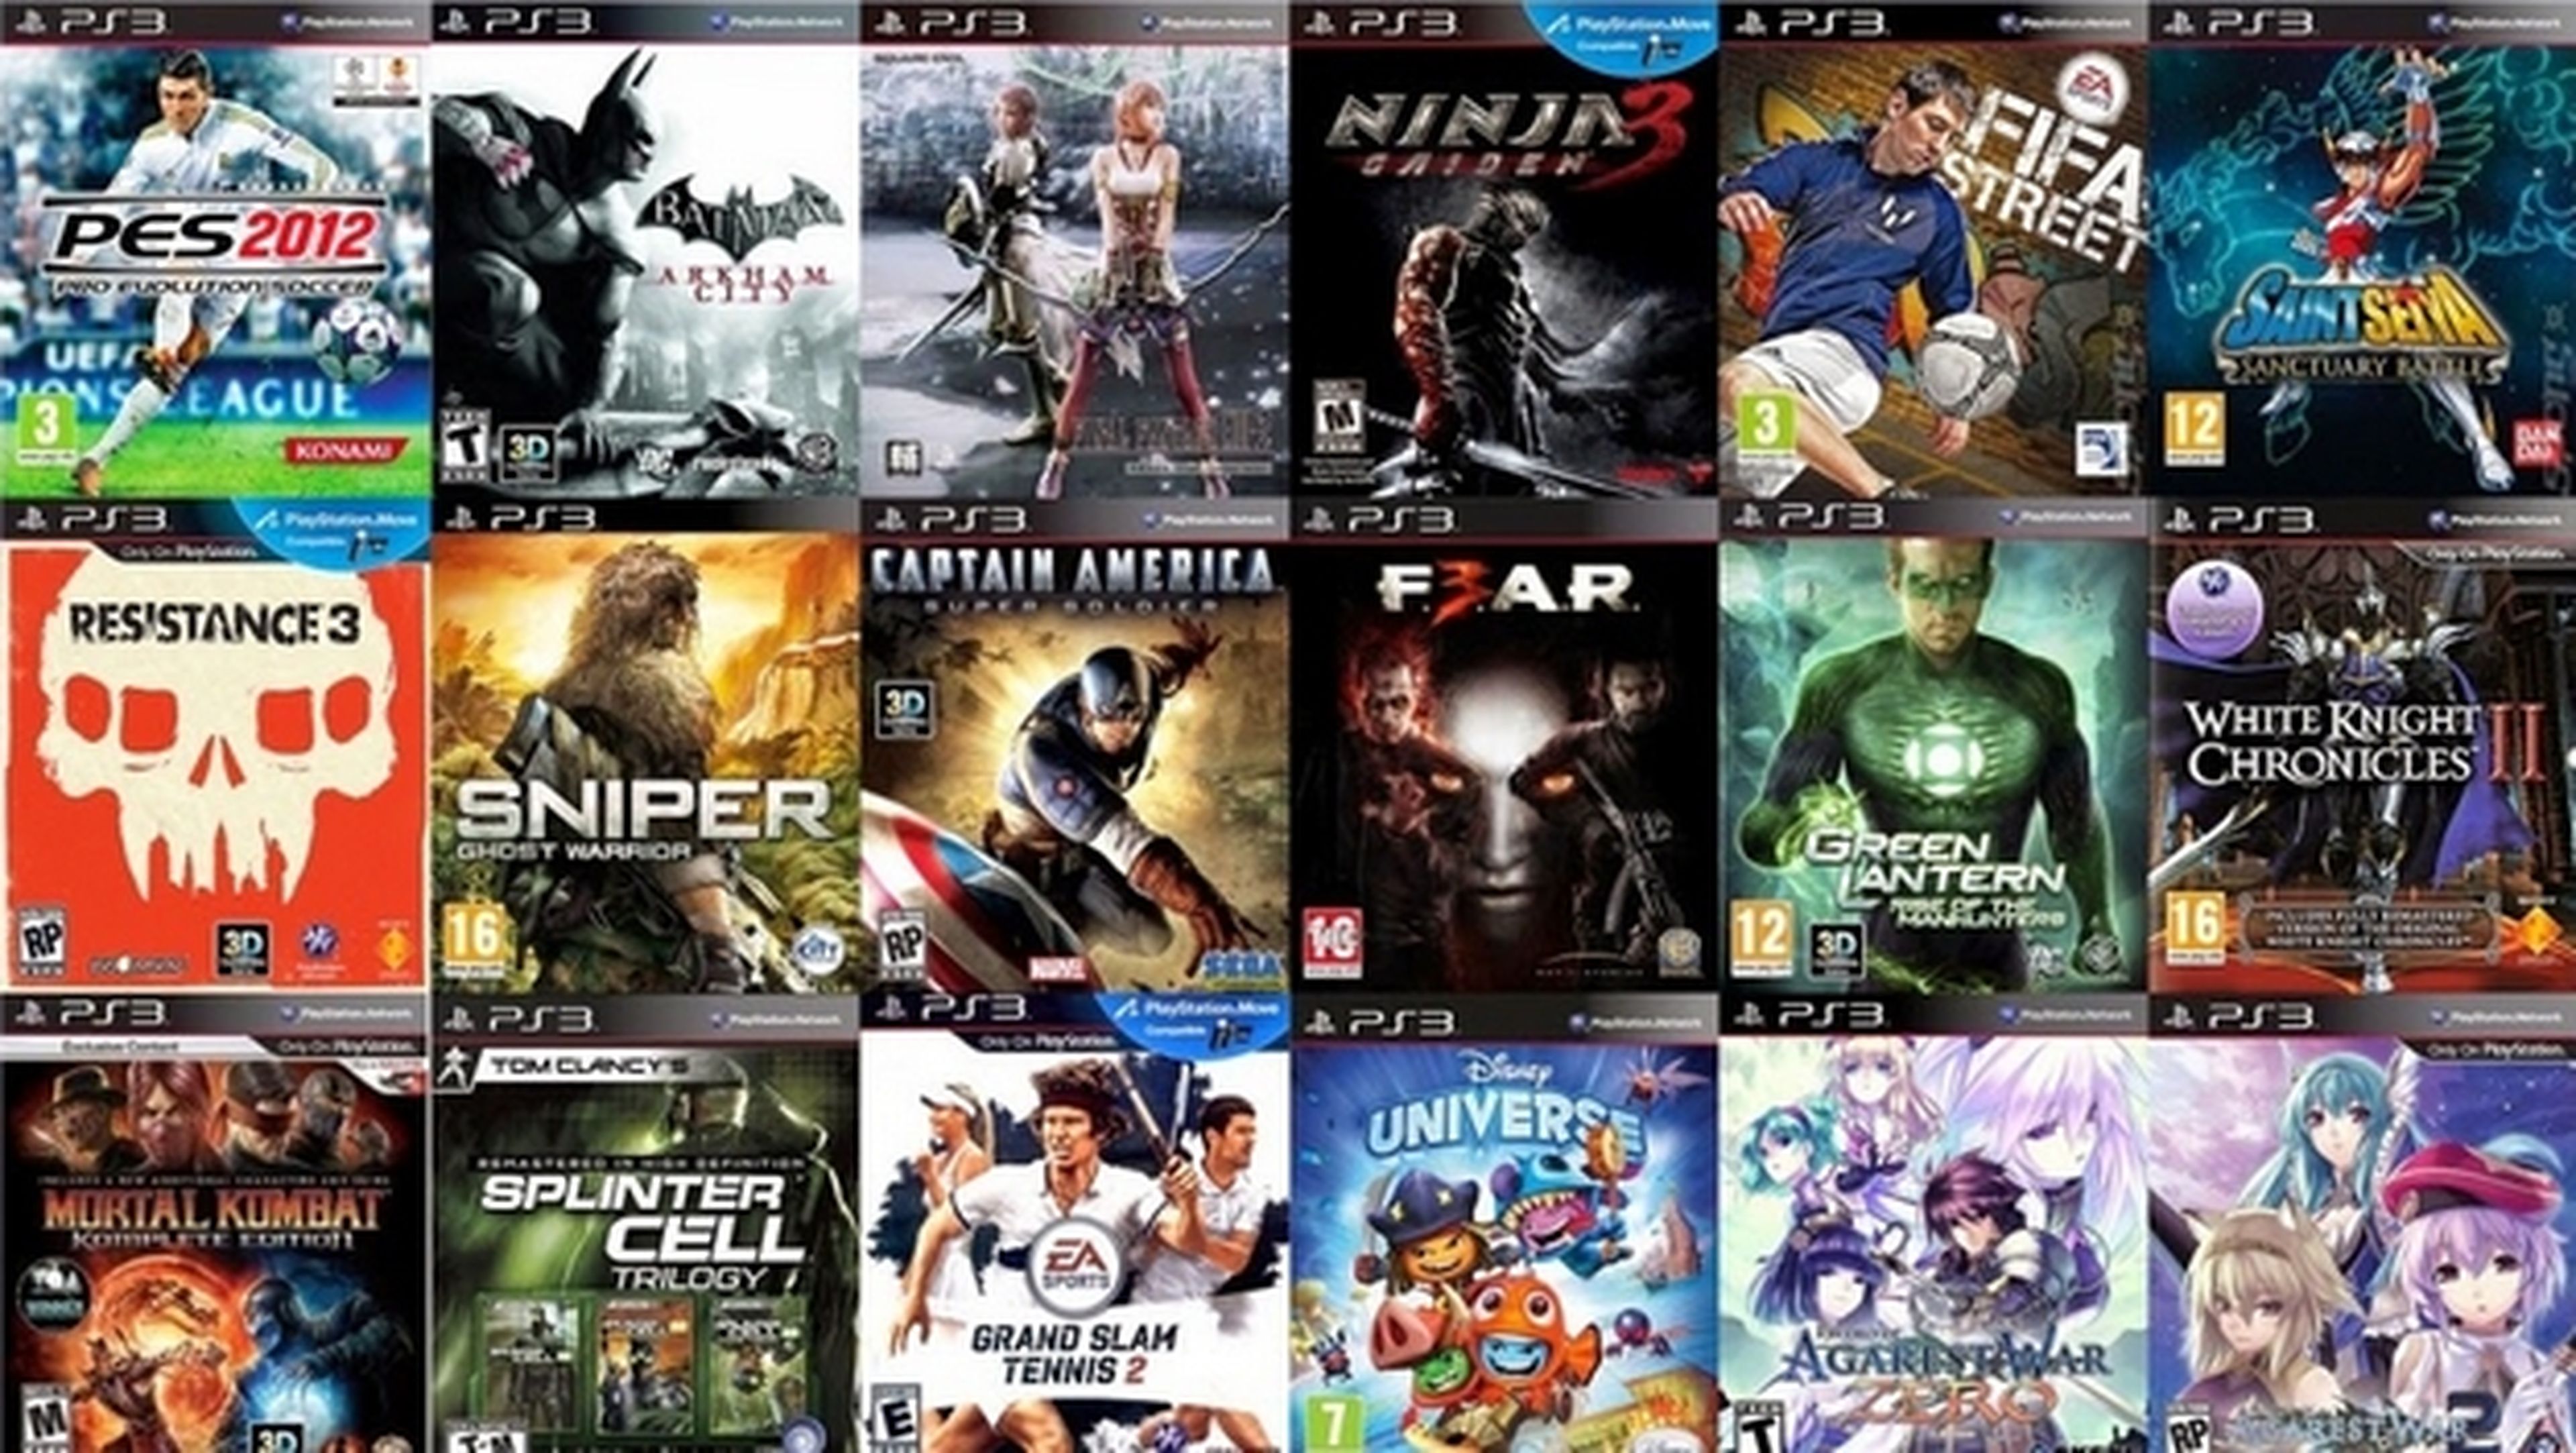 Estable Experto Transición Tus juegos de PS3 no funcionarán en PS4, según Sony | Computer Hoy